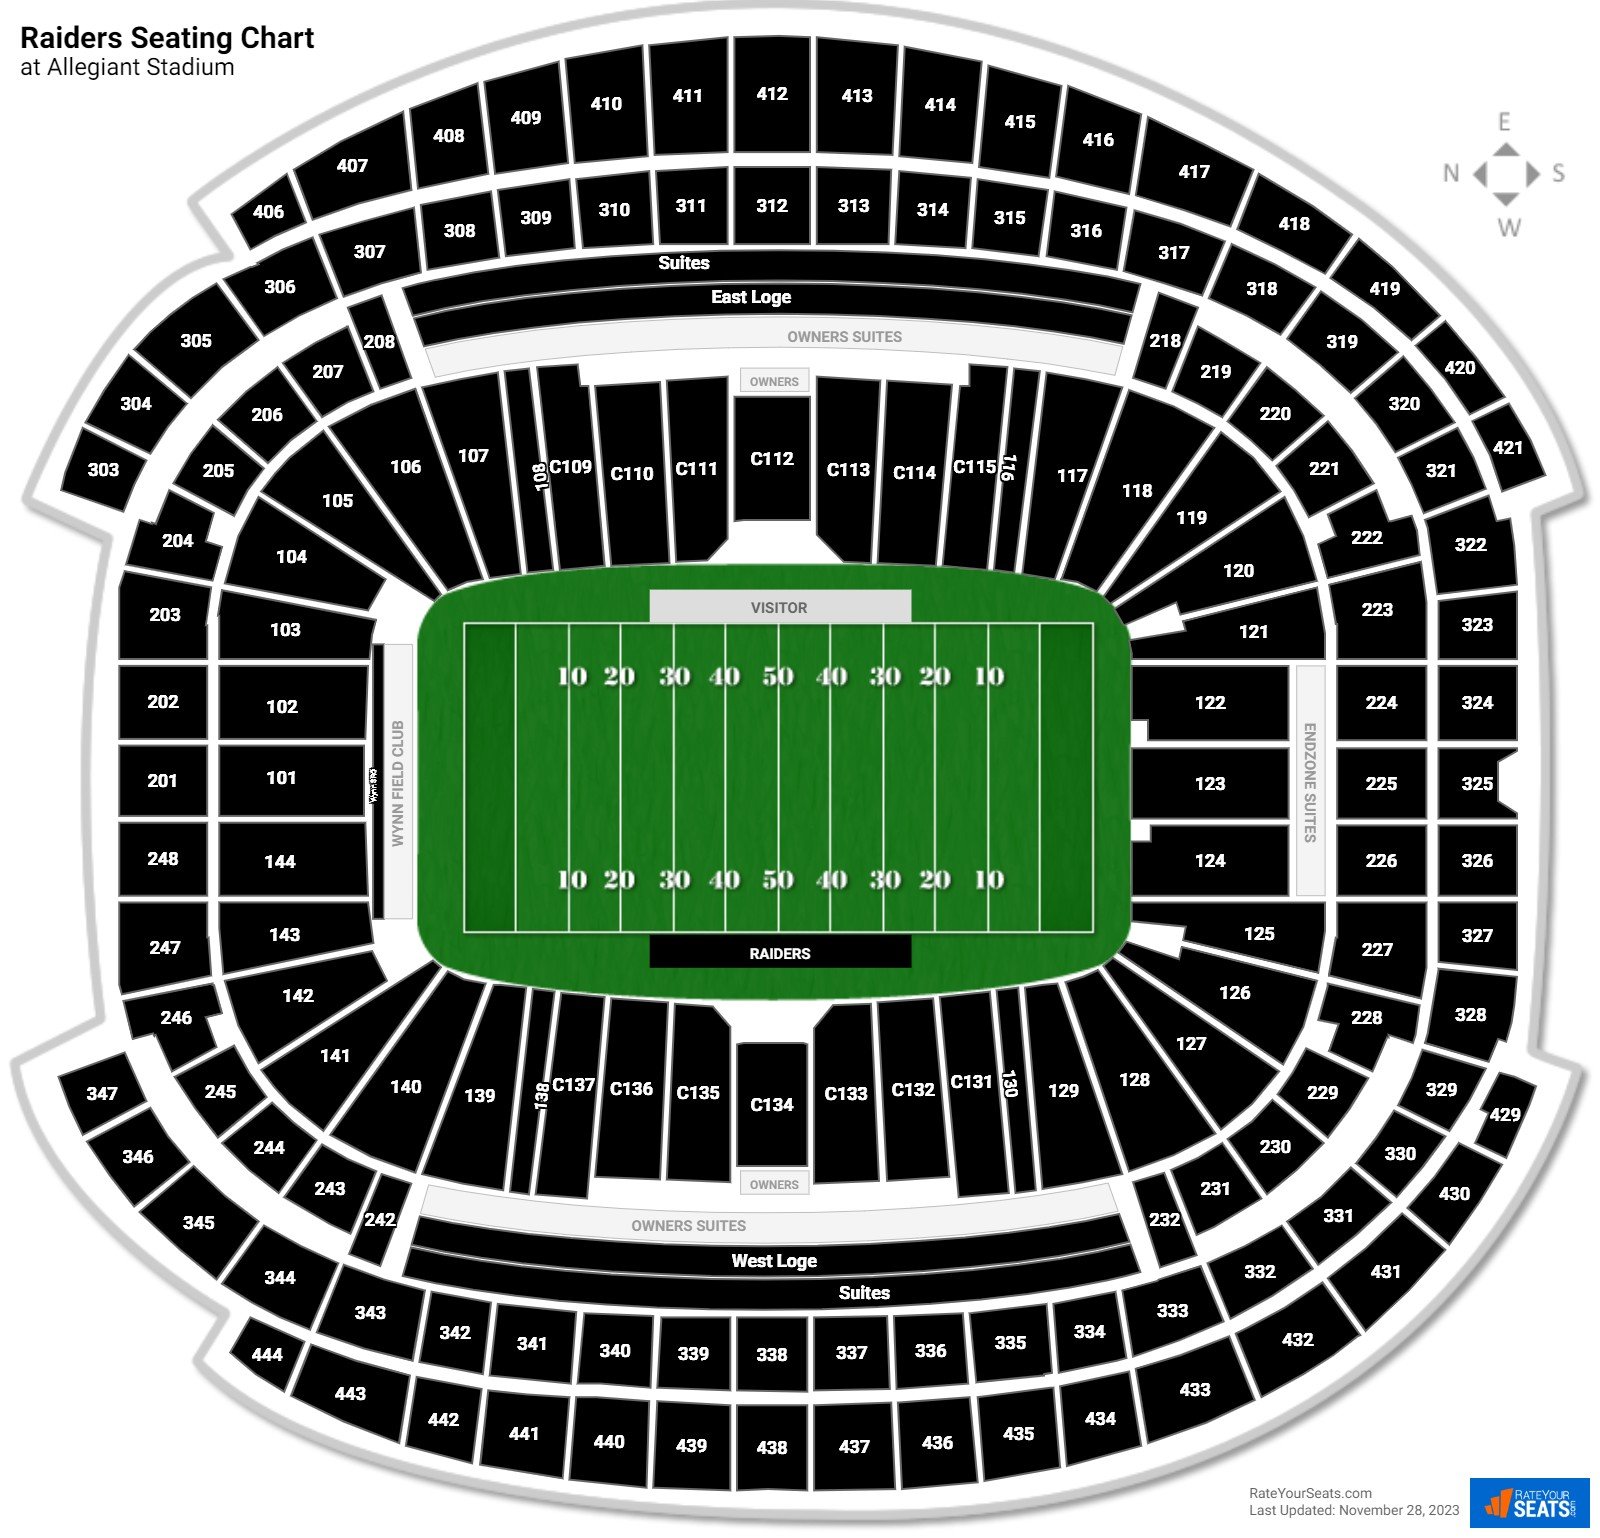 Raiders Seating Chart At Allegiant Stadium 